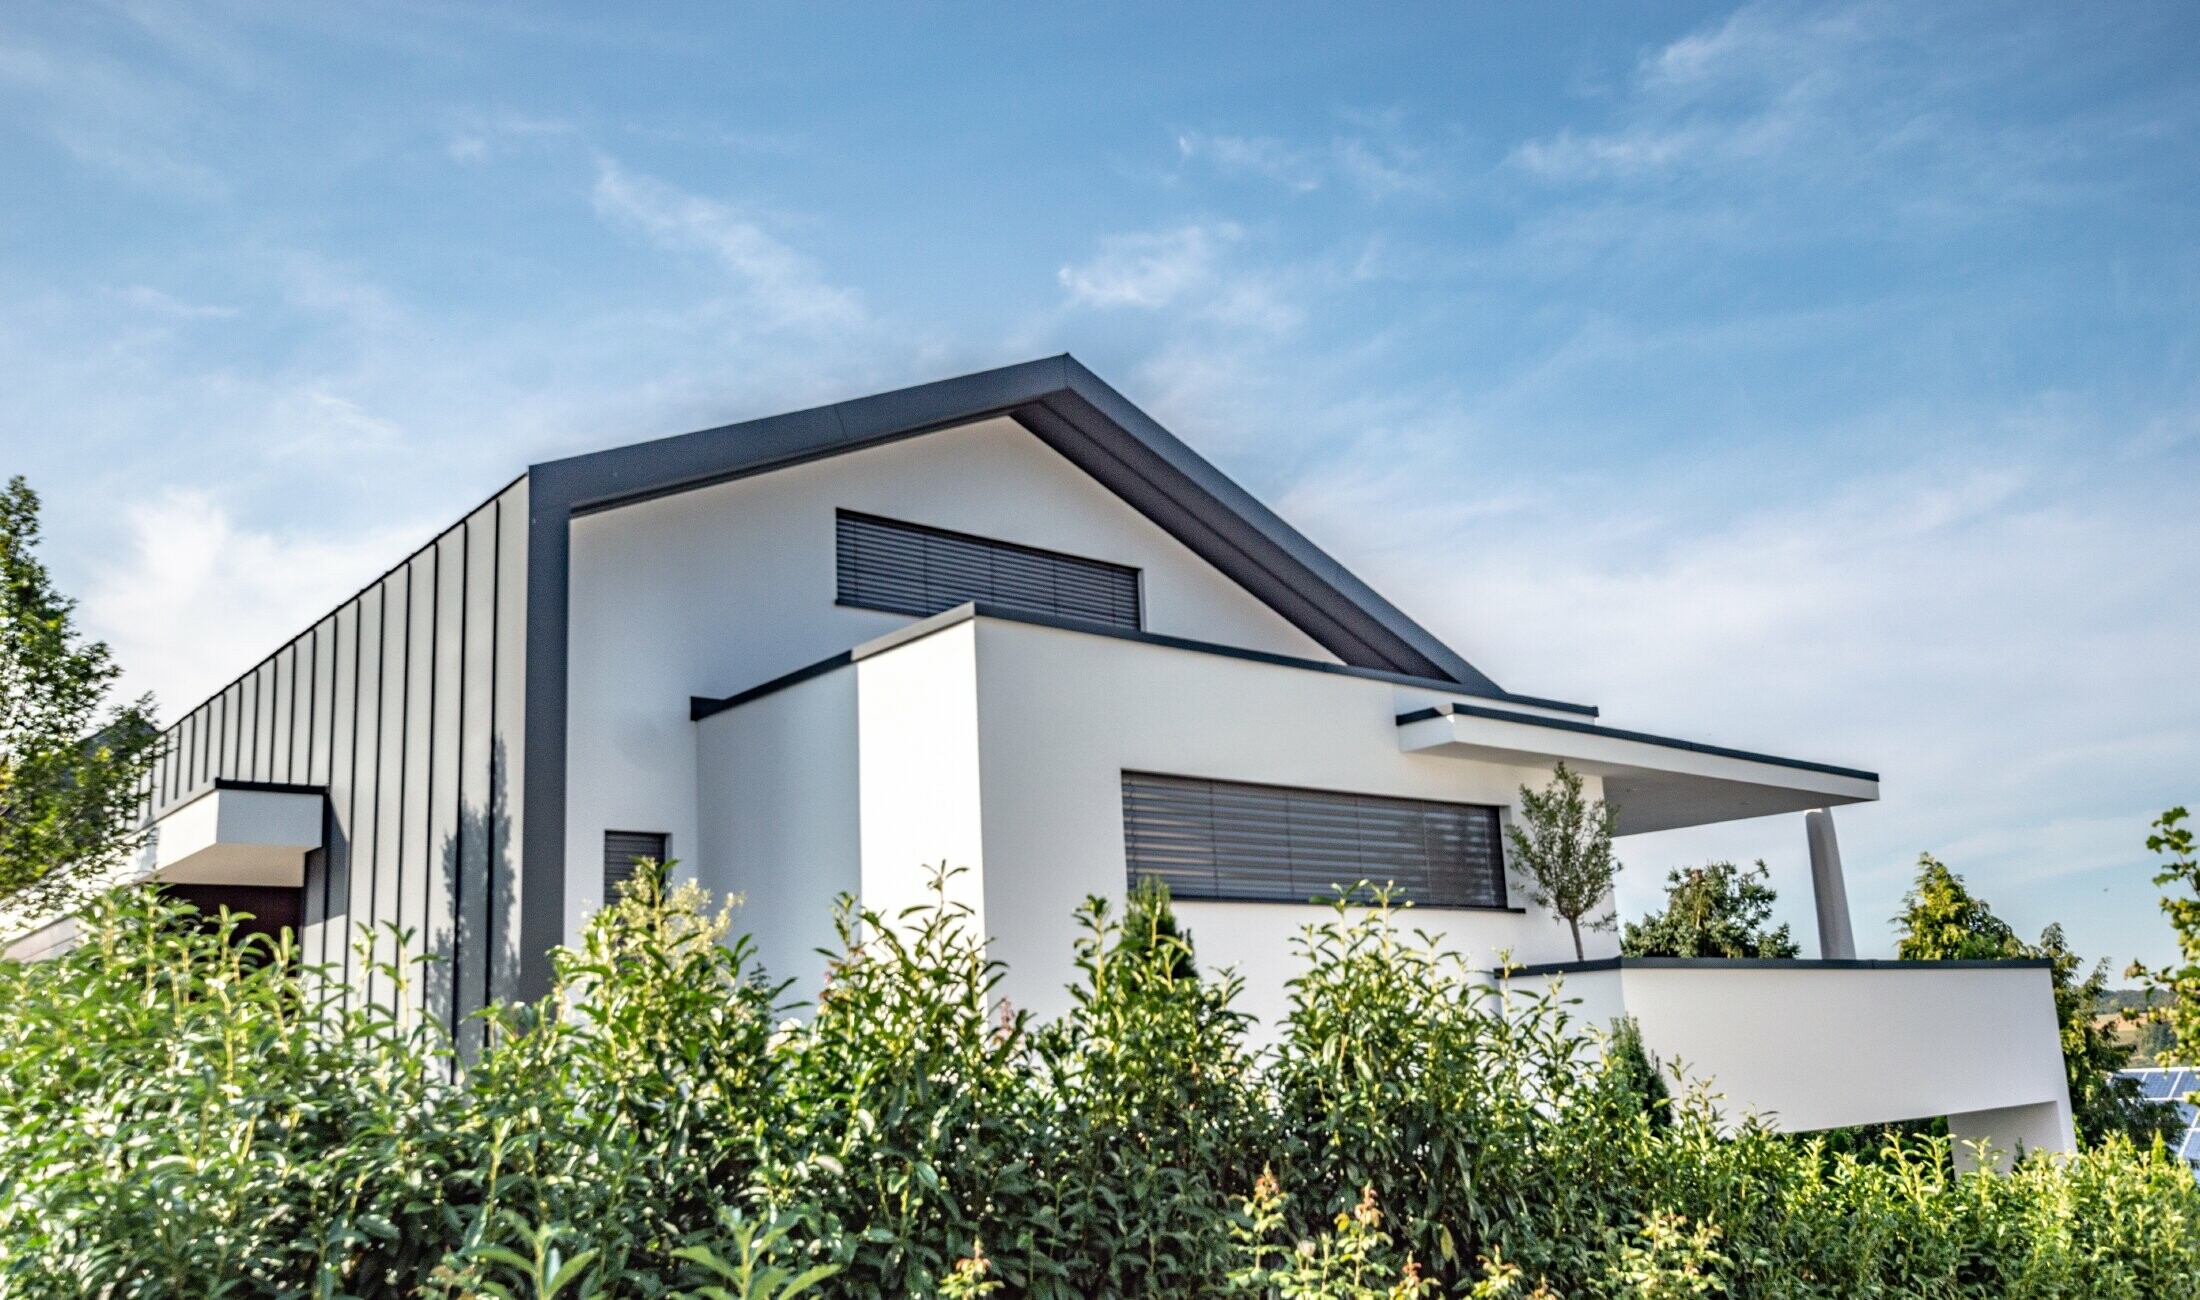 På detta moderna familjehus fortsätter takbeläggningen som stående vinkelfals visuellt från fasadbeläggningen. Färgen på PREFA-materialet är antracitgrått.